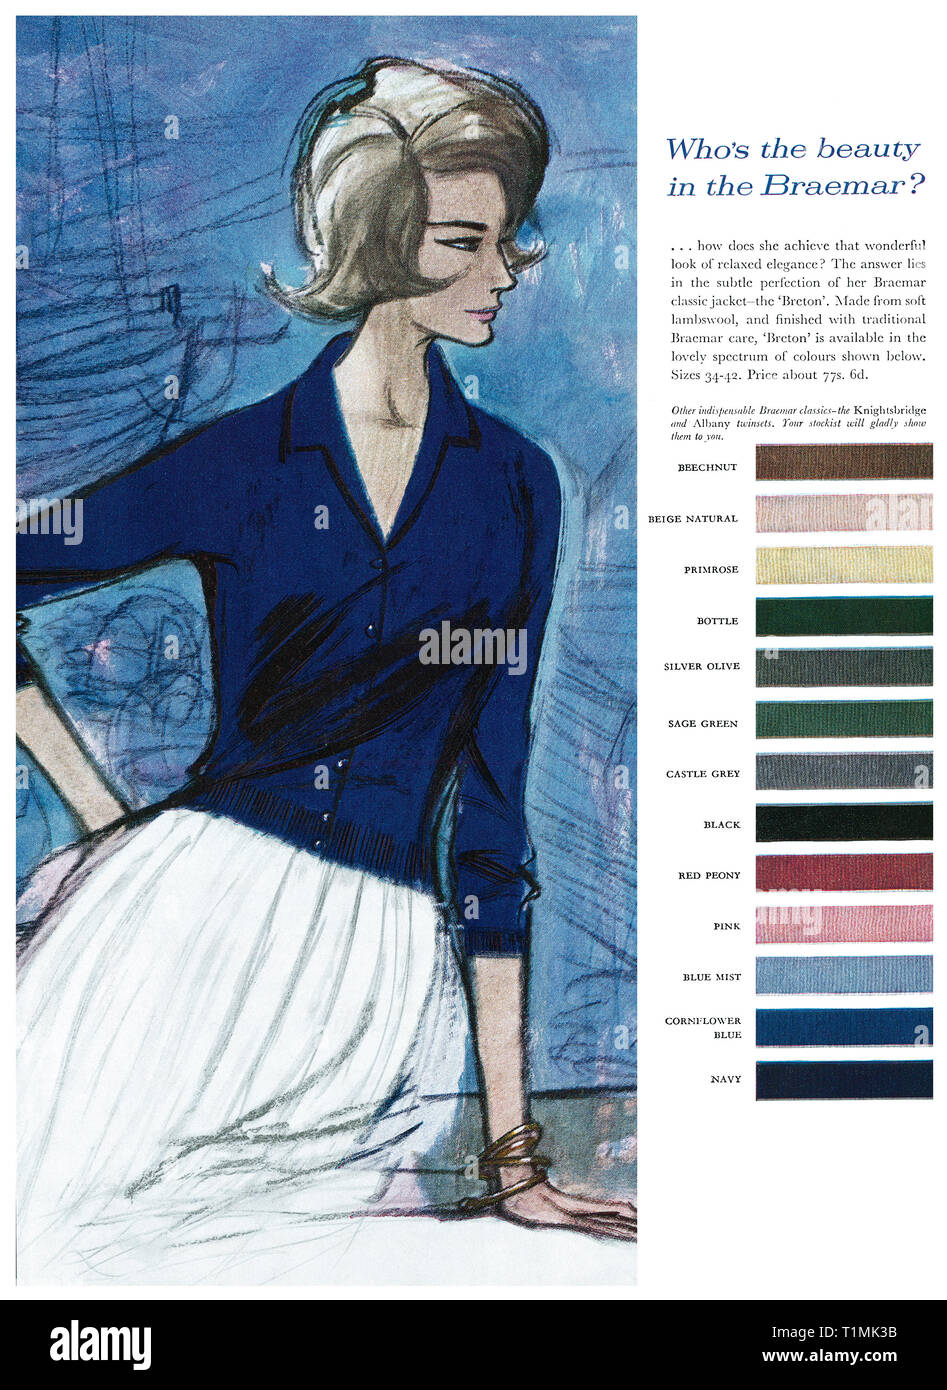 Braemar knitwear immagini e fotografie stock ad alta risoluzione - Alamy